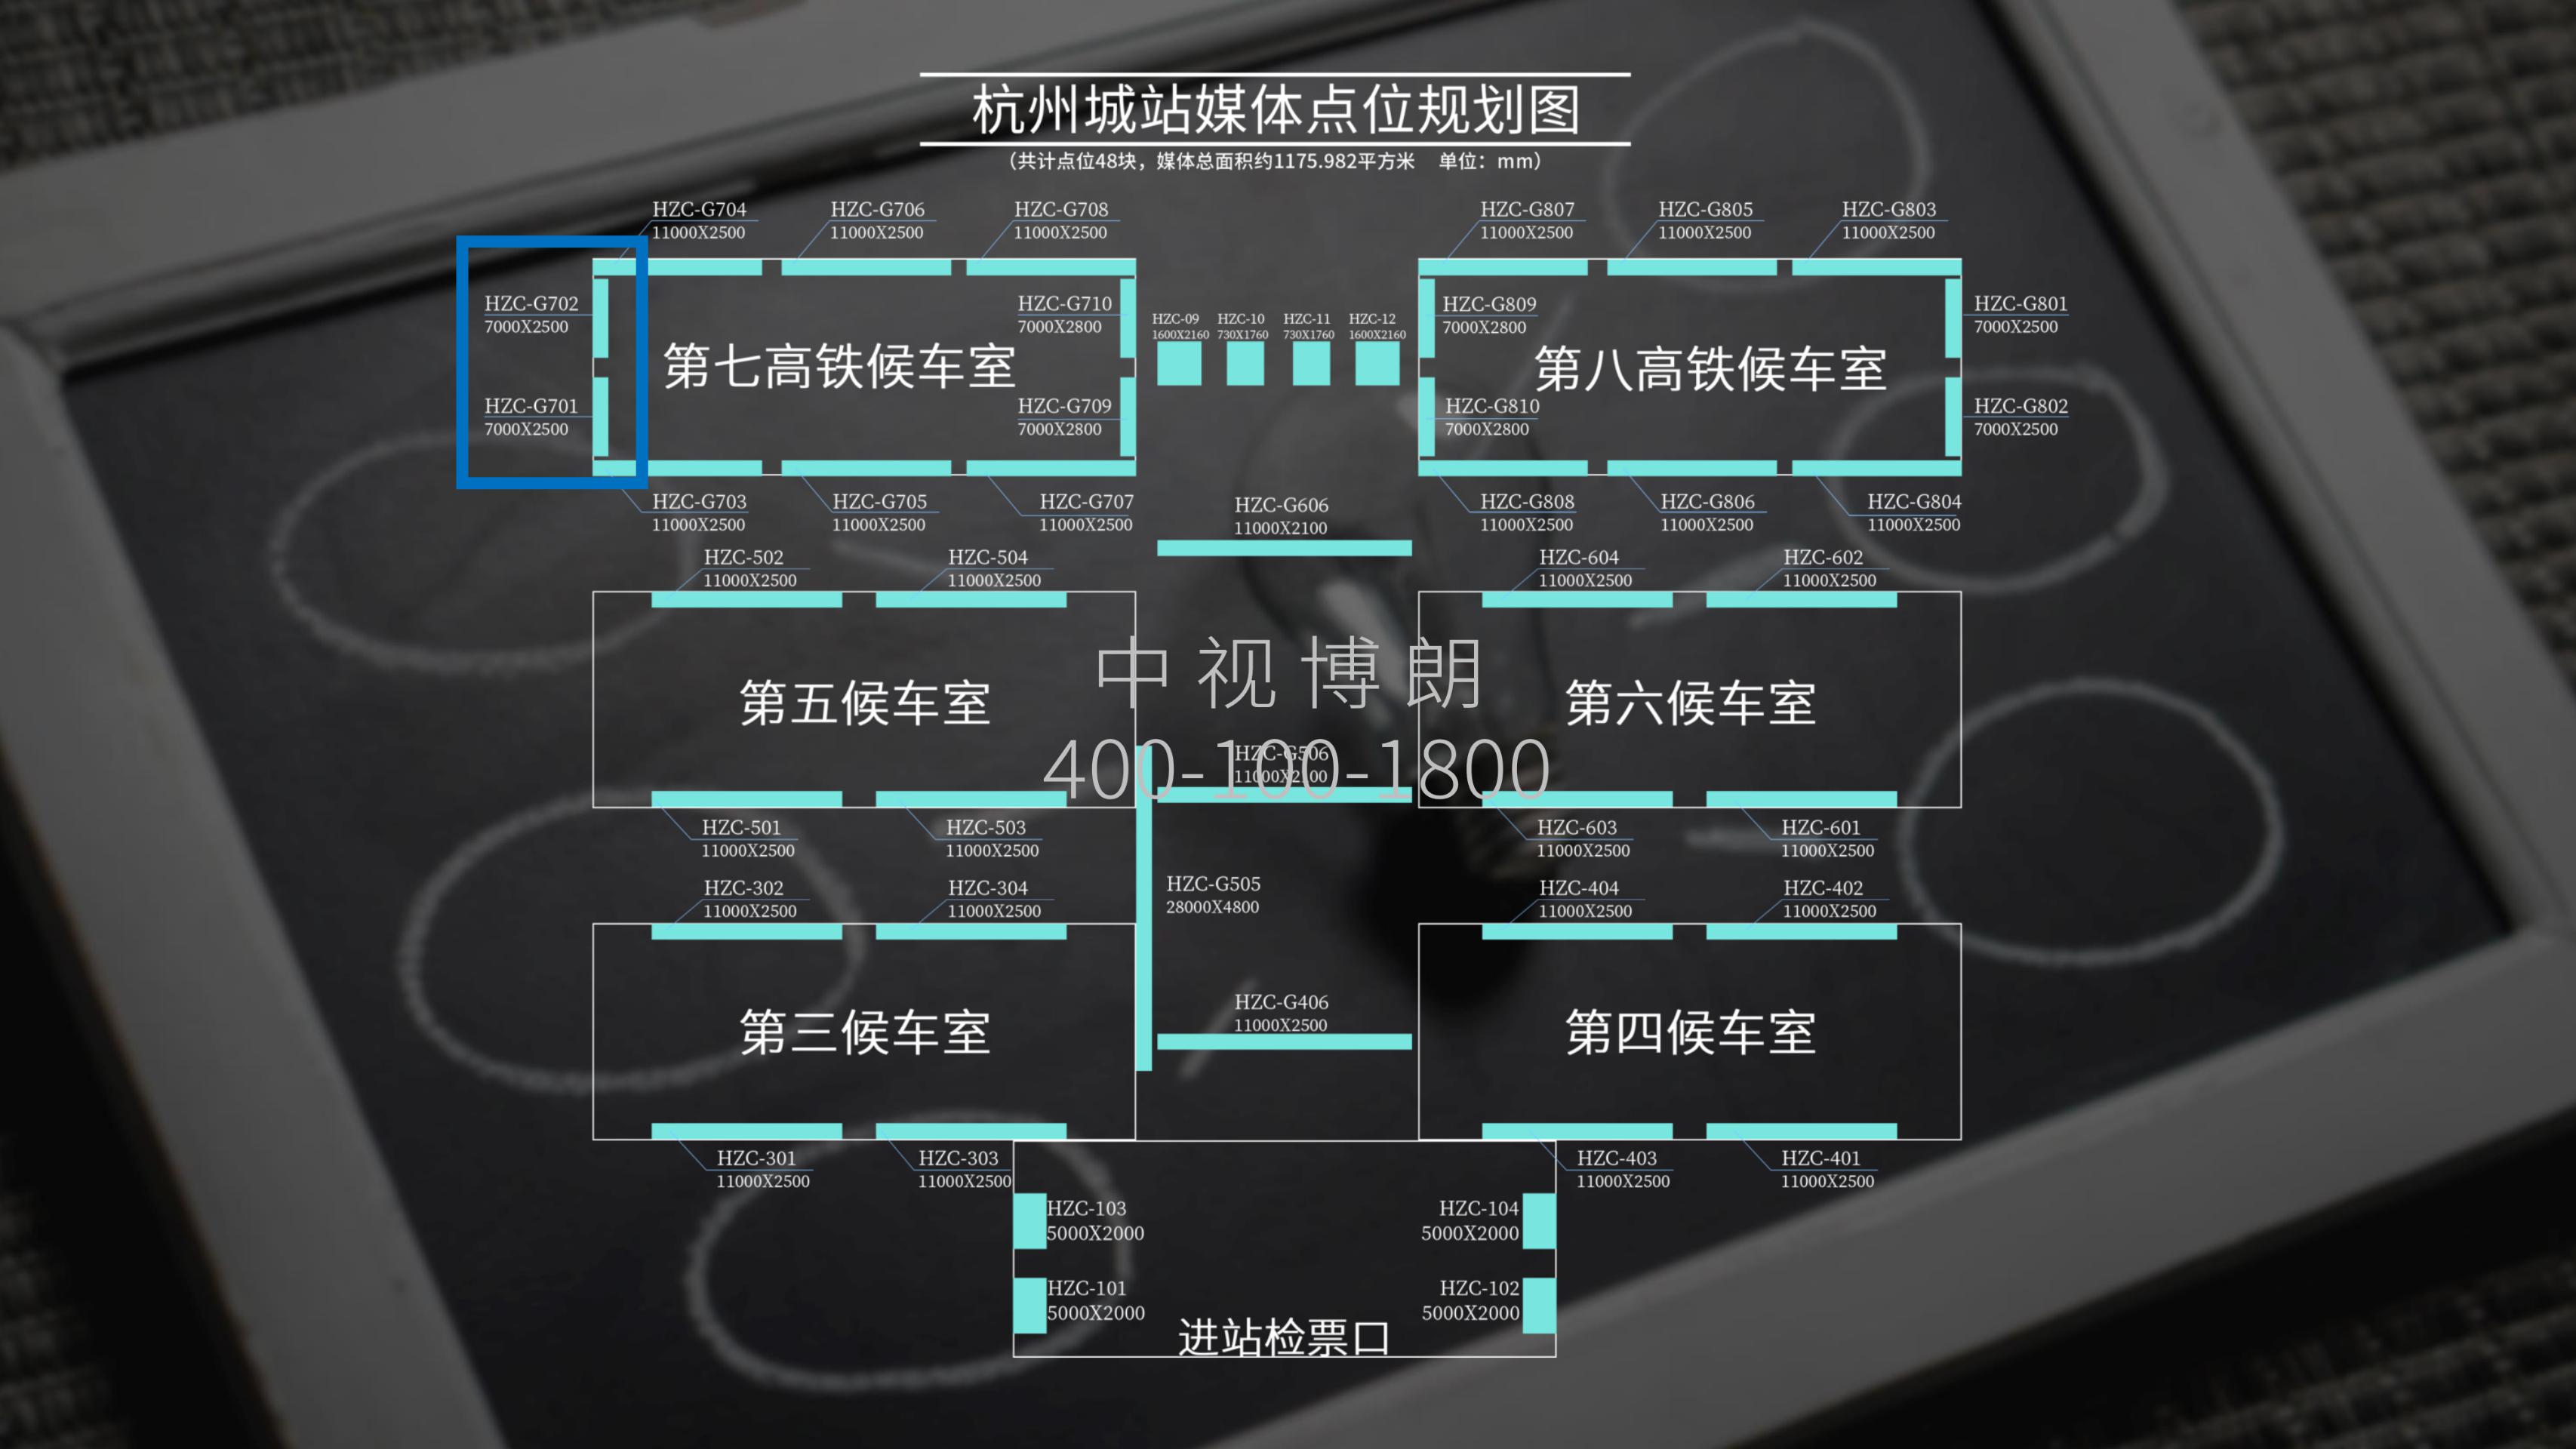 杭州站-第七候车室检票口上方灯箱点位图